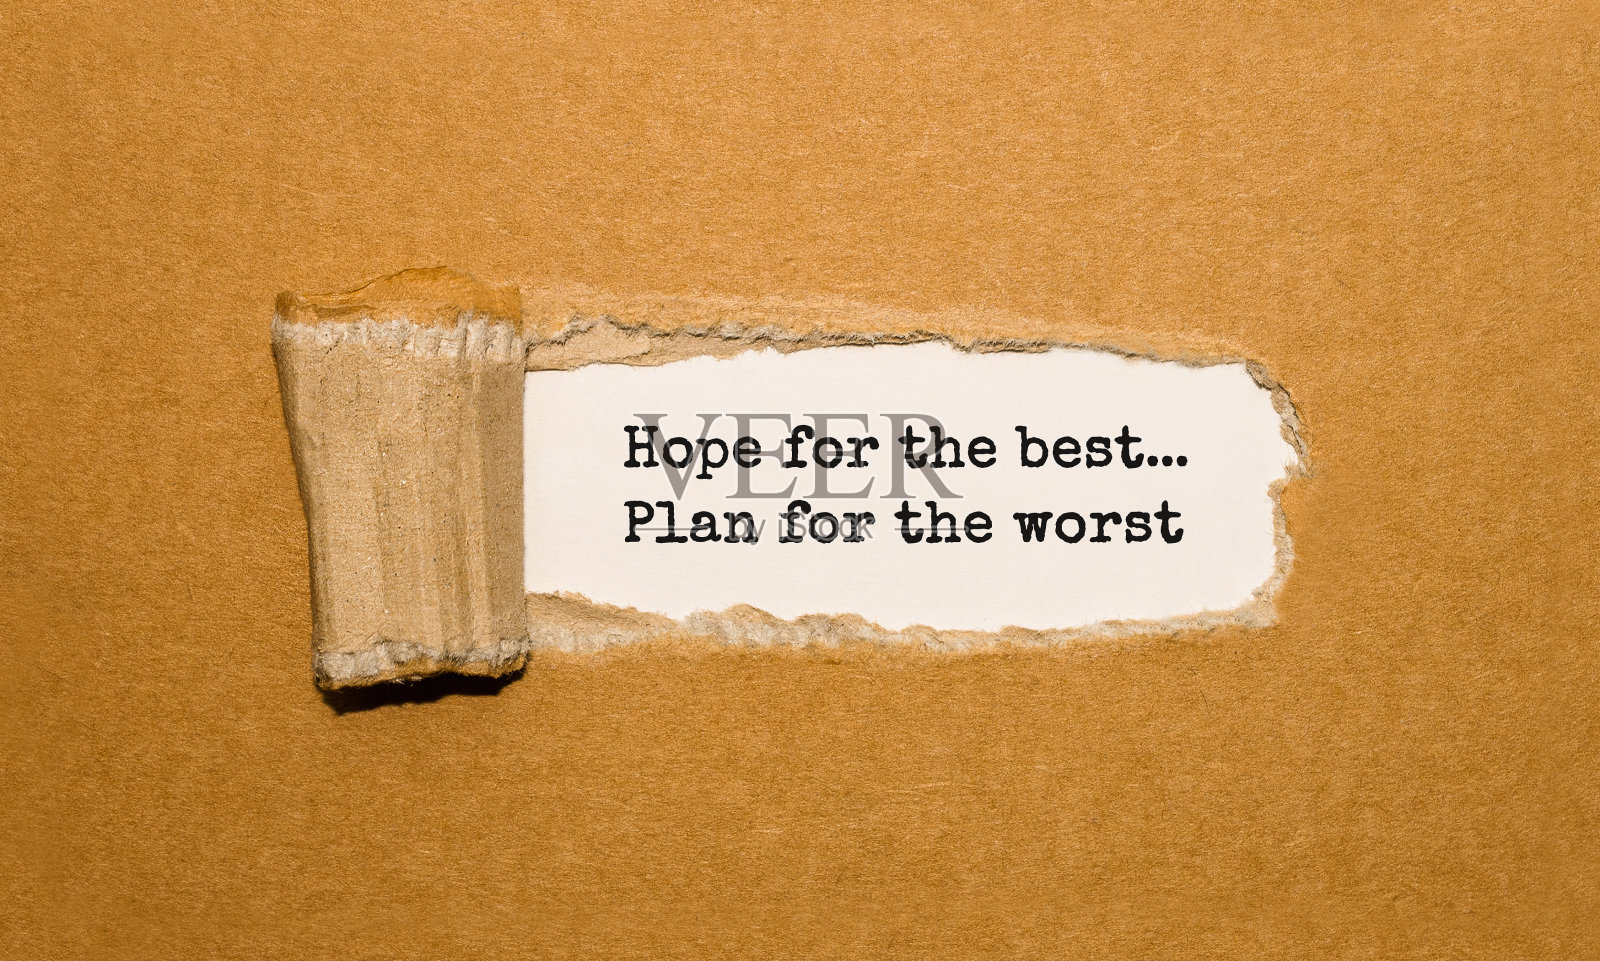 “抱最好的希望，做最坏的打算”这句话出现在撕破的牛皮纸后面照片摄影图片